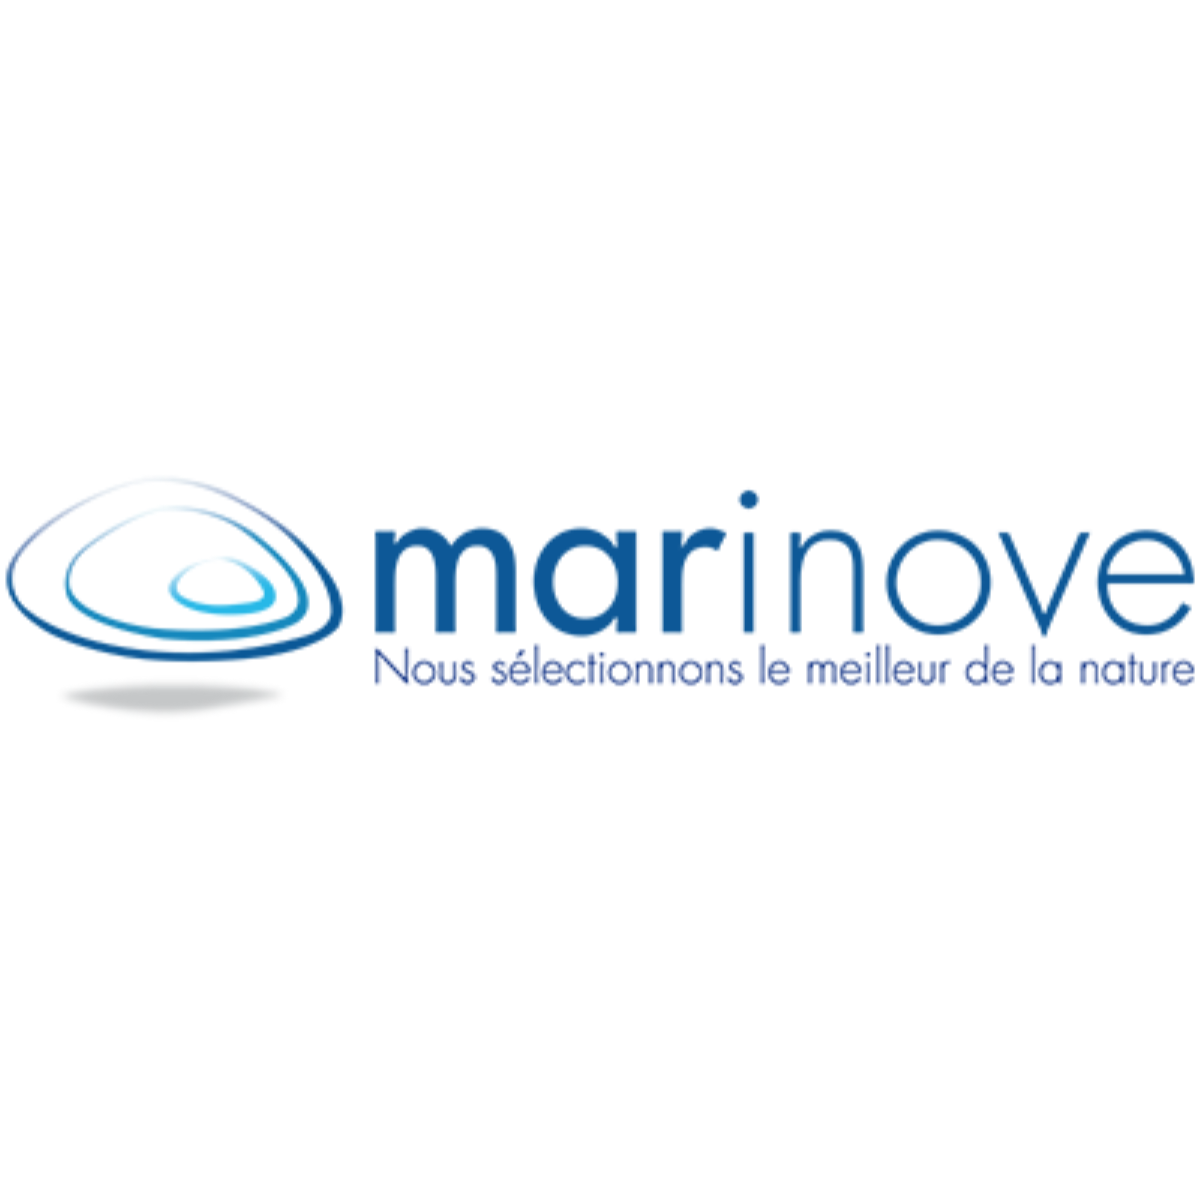 Marinove